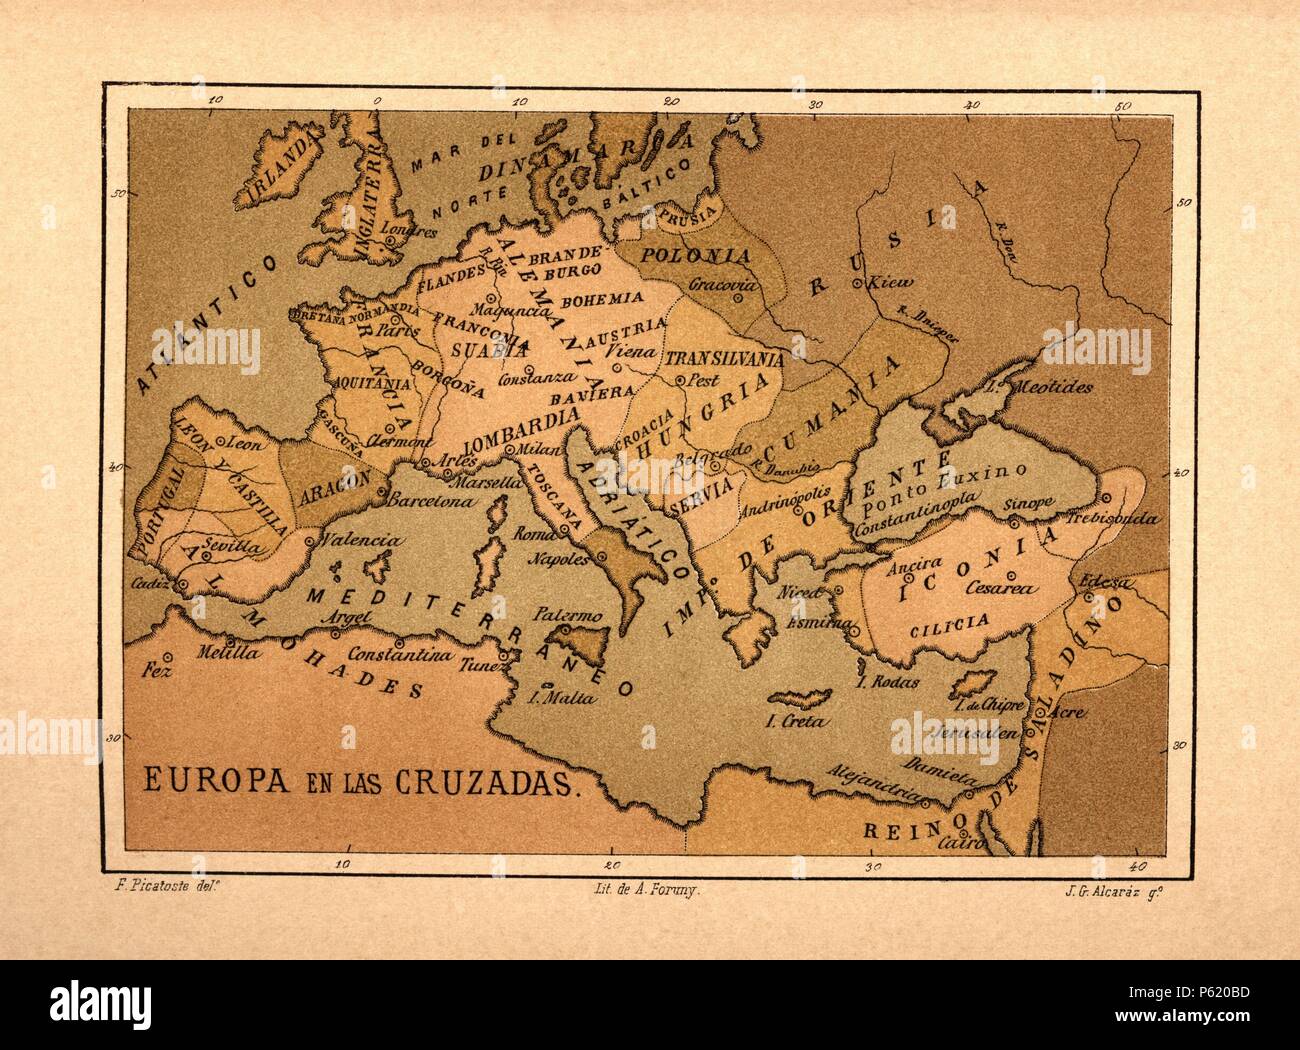 Mapa de Europa en las Cruzadas publicado en el libro Historia Universal, de Felipe Picatoste. Madrid, 1890. Stock Photo